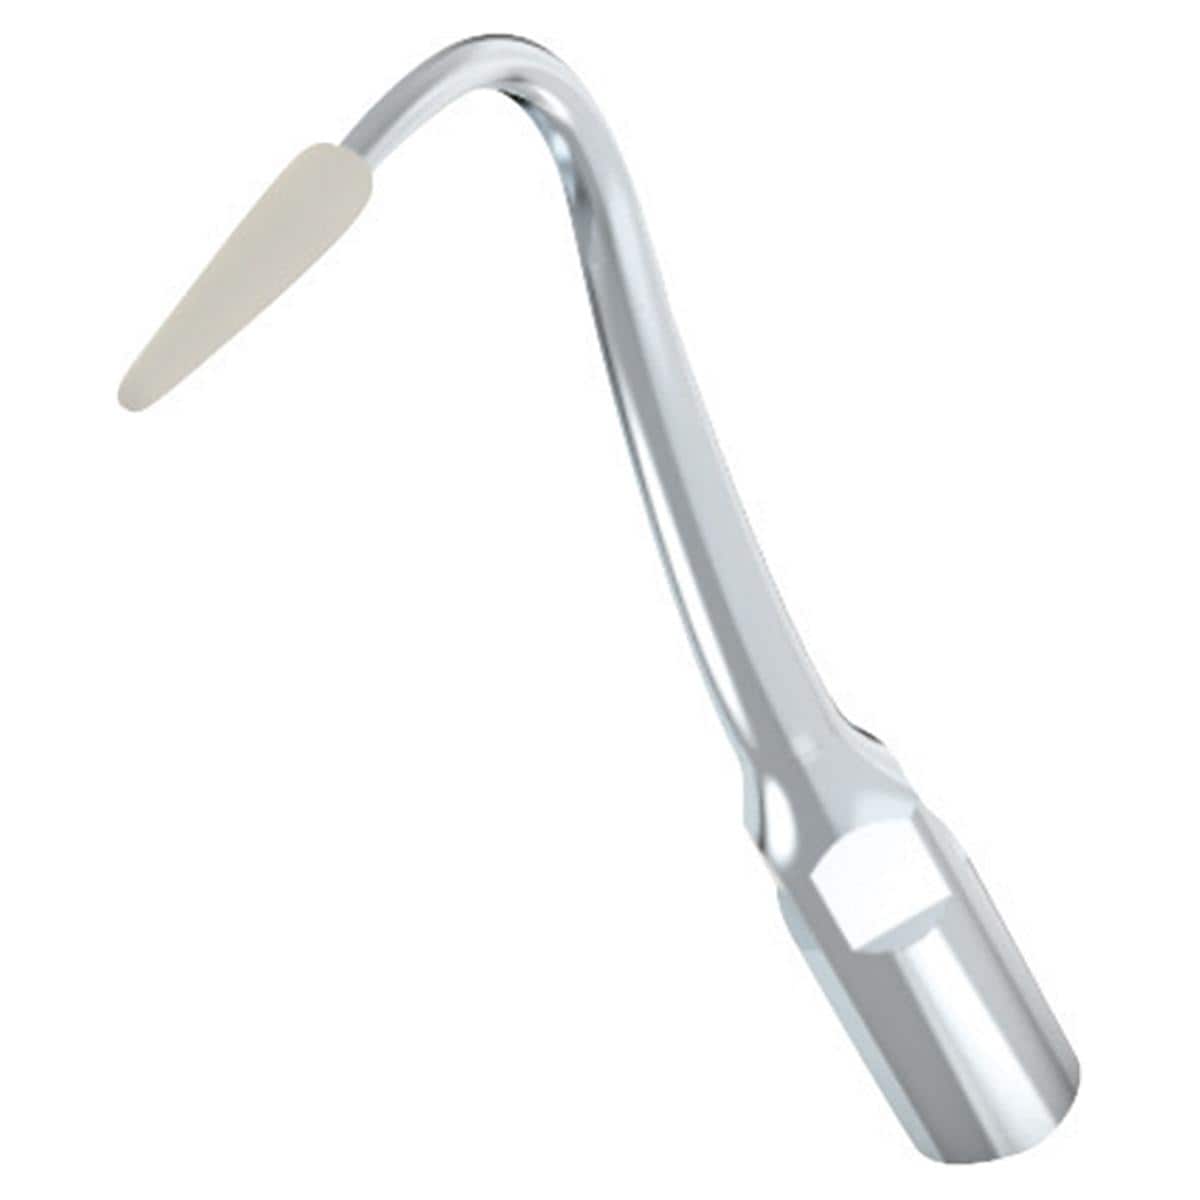 B.A. Scaler Tip für UC500L Prophylaxegerät - Figur BAC90E, zur Reinigung von Implantaten und Zahnrestaurationen